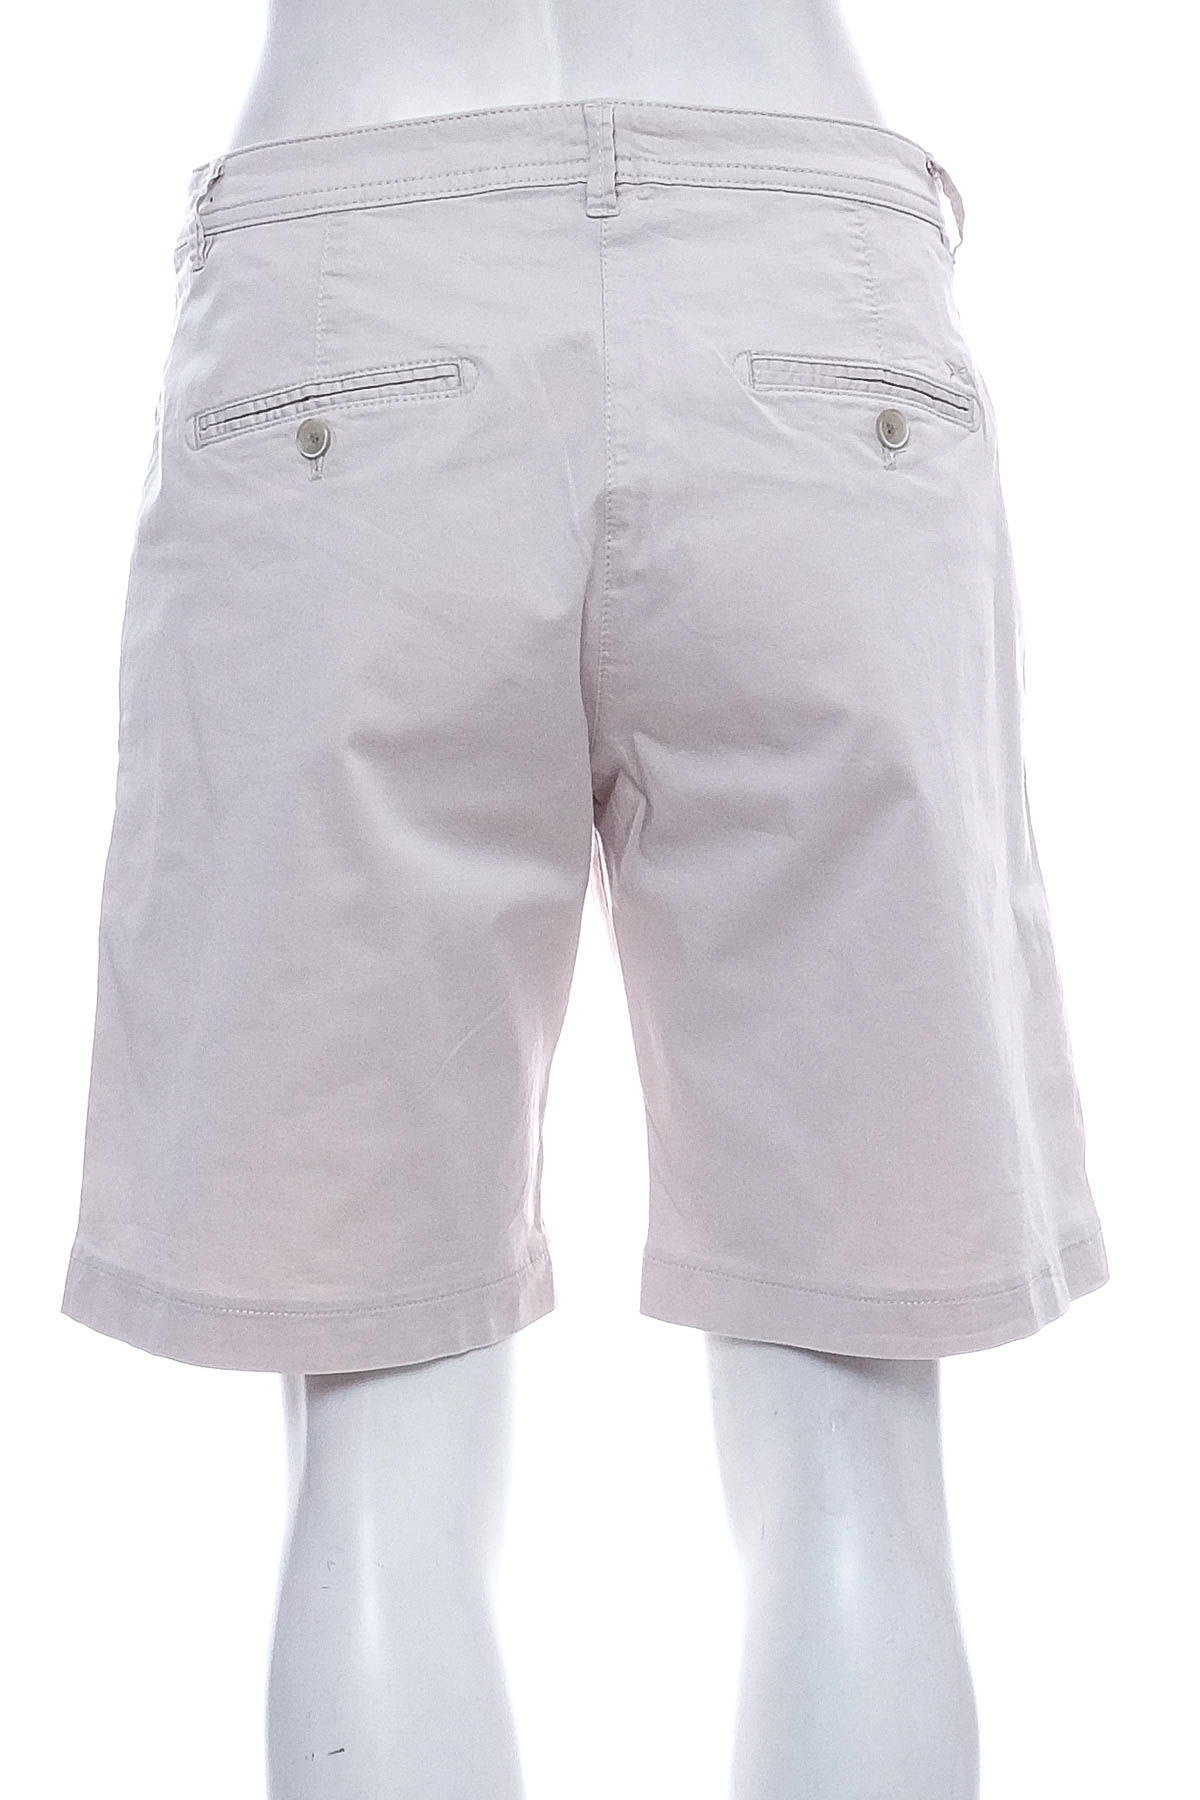 Female shorts - BRAX - 1